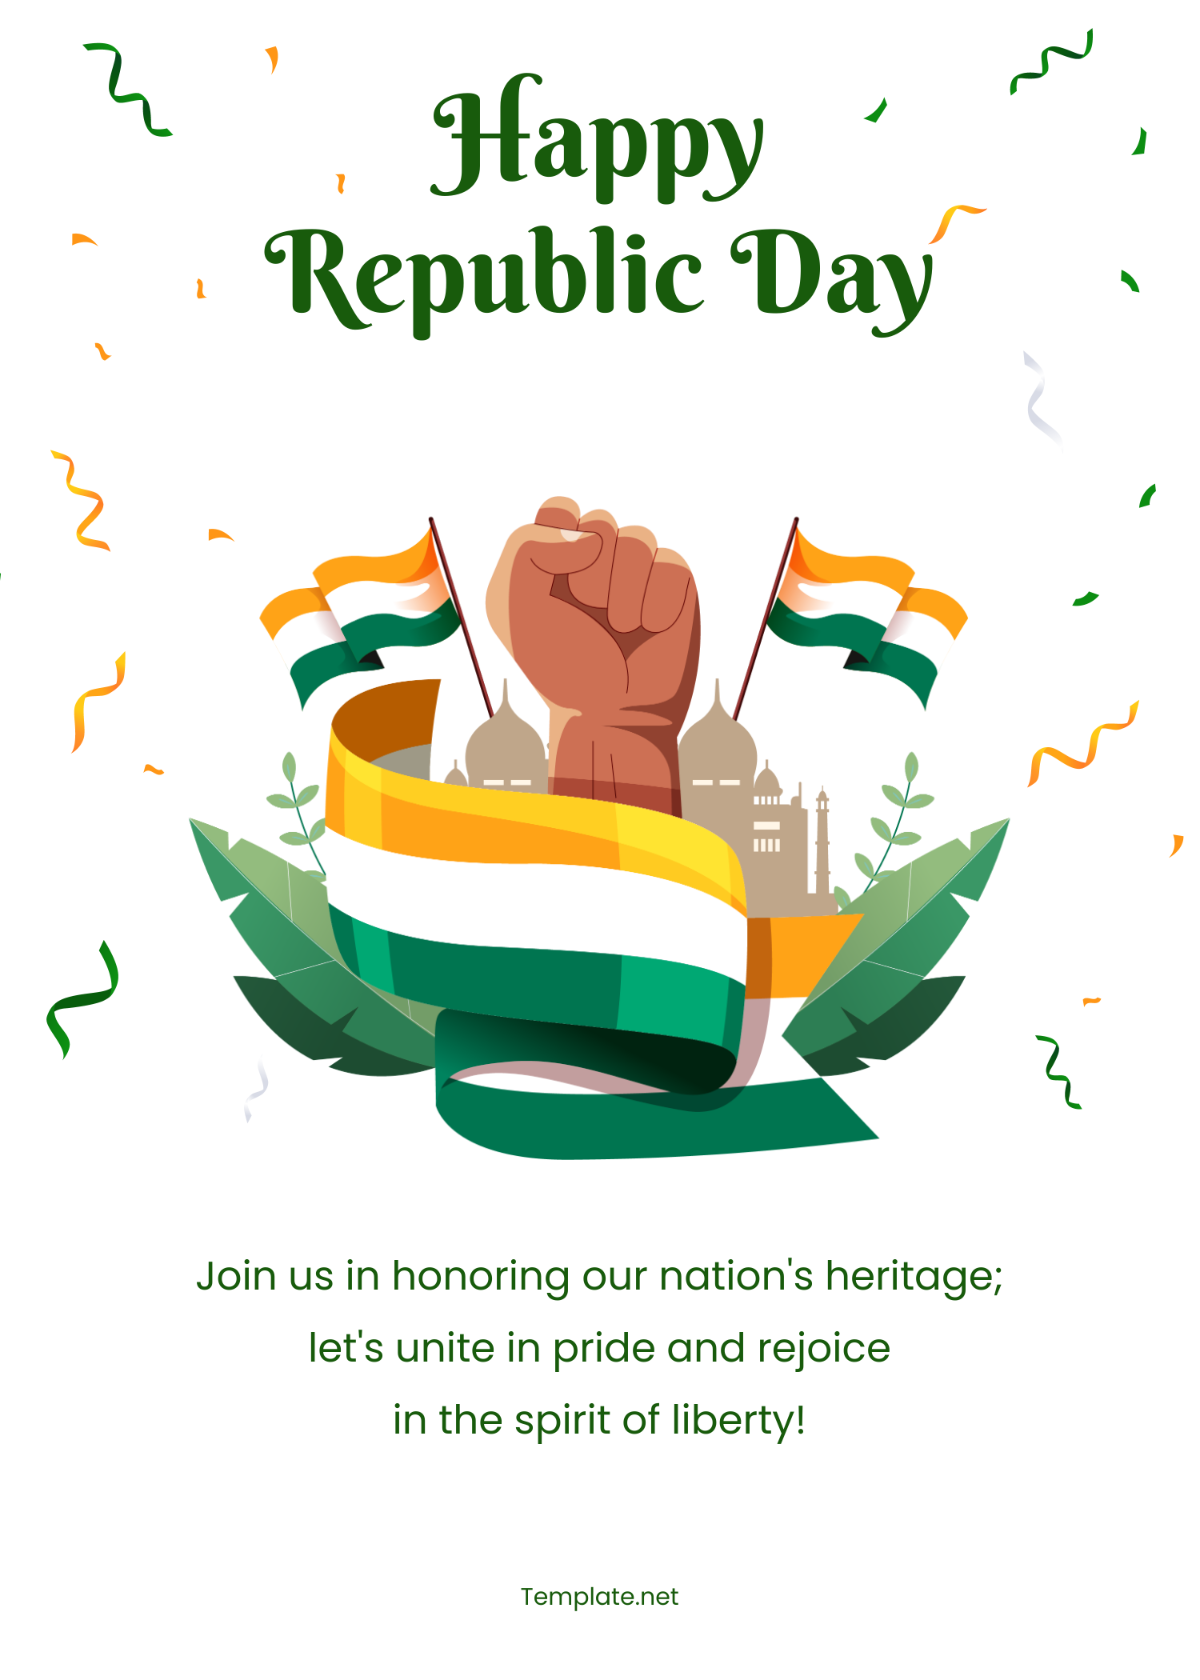 Happy Republic Day Template